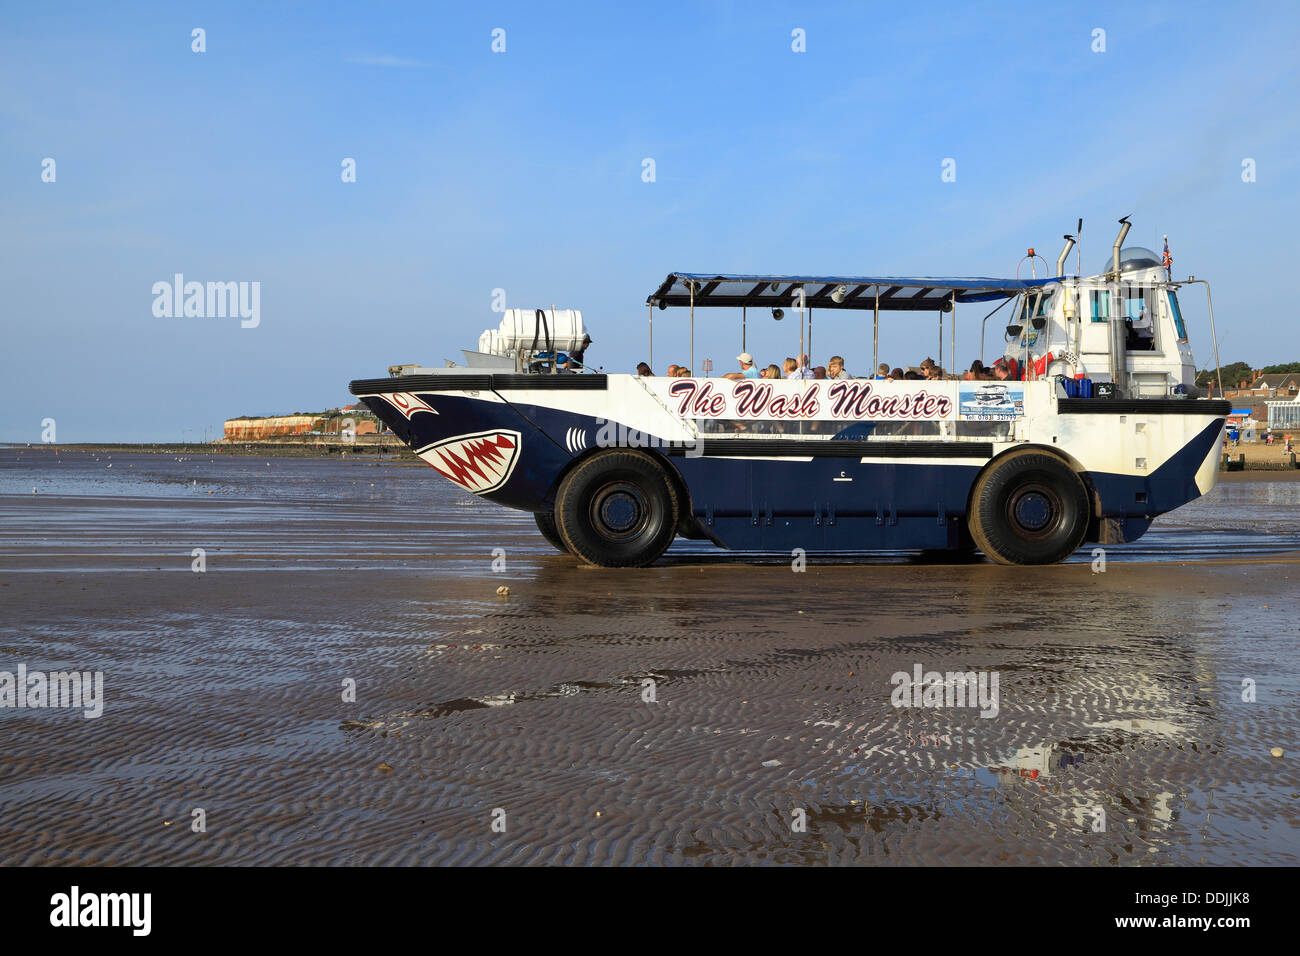 Lave el monstruo, Hunstanton Playa, Norfolk, Inglaterra anfibio excursiones marítimas de recreo barco Foto de stock